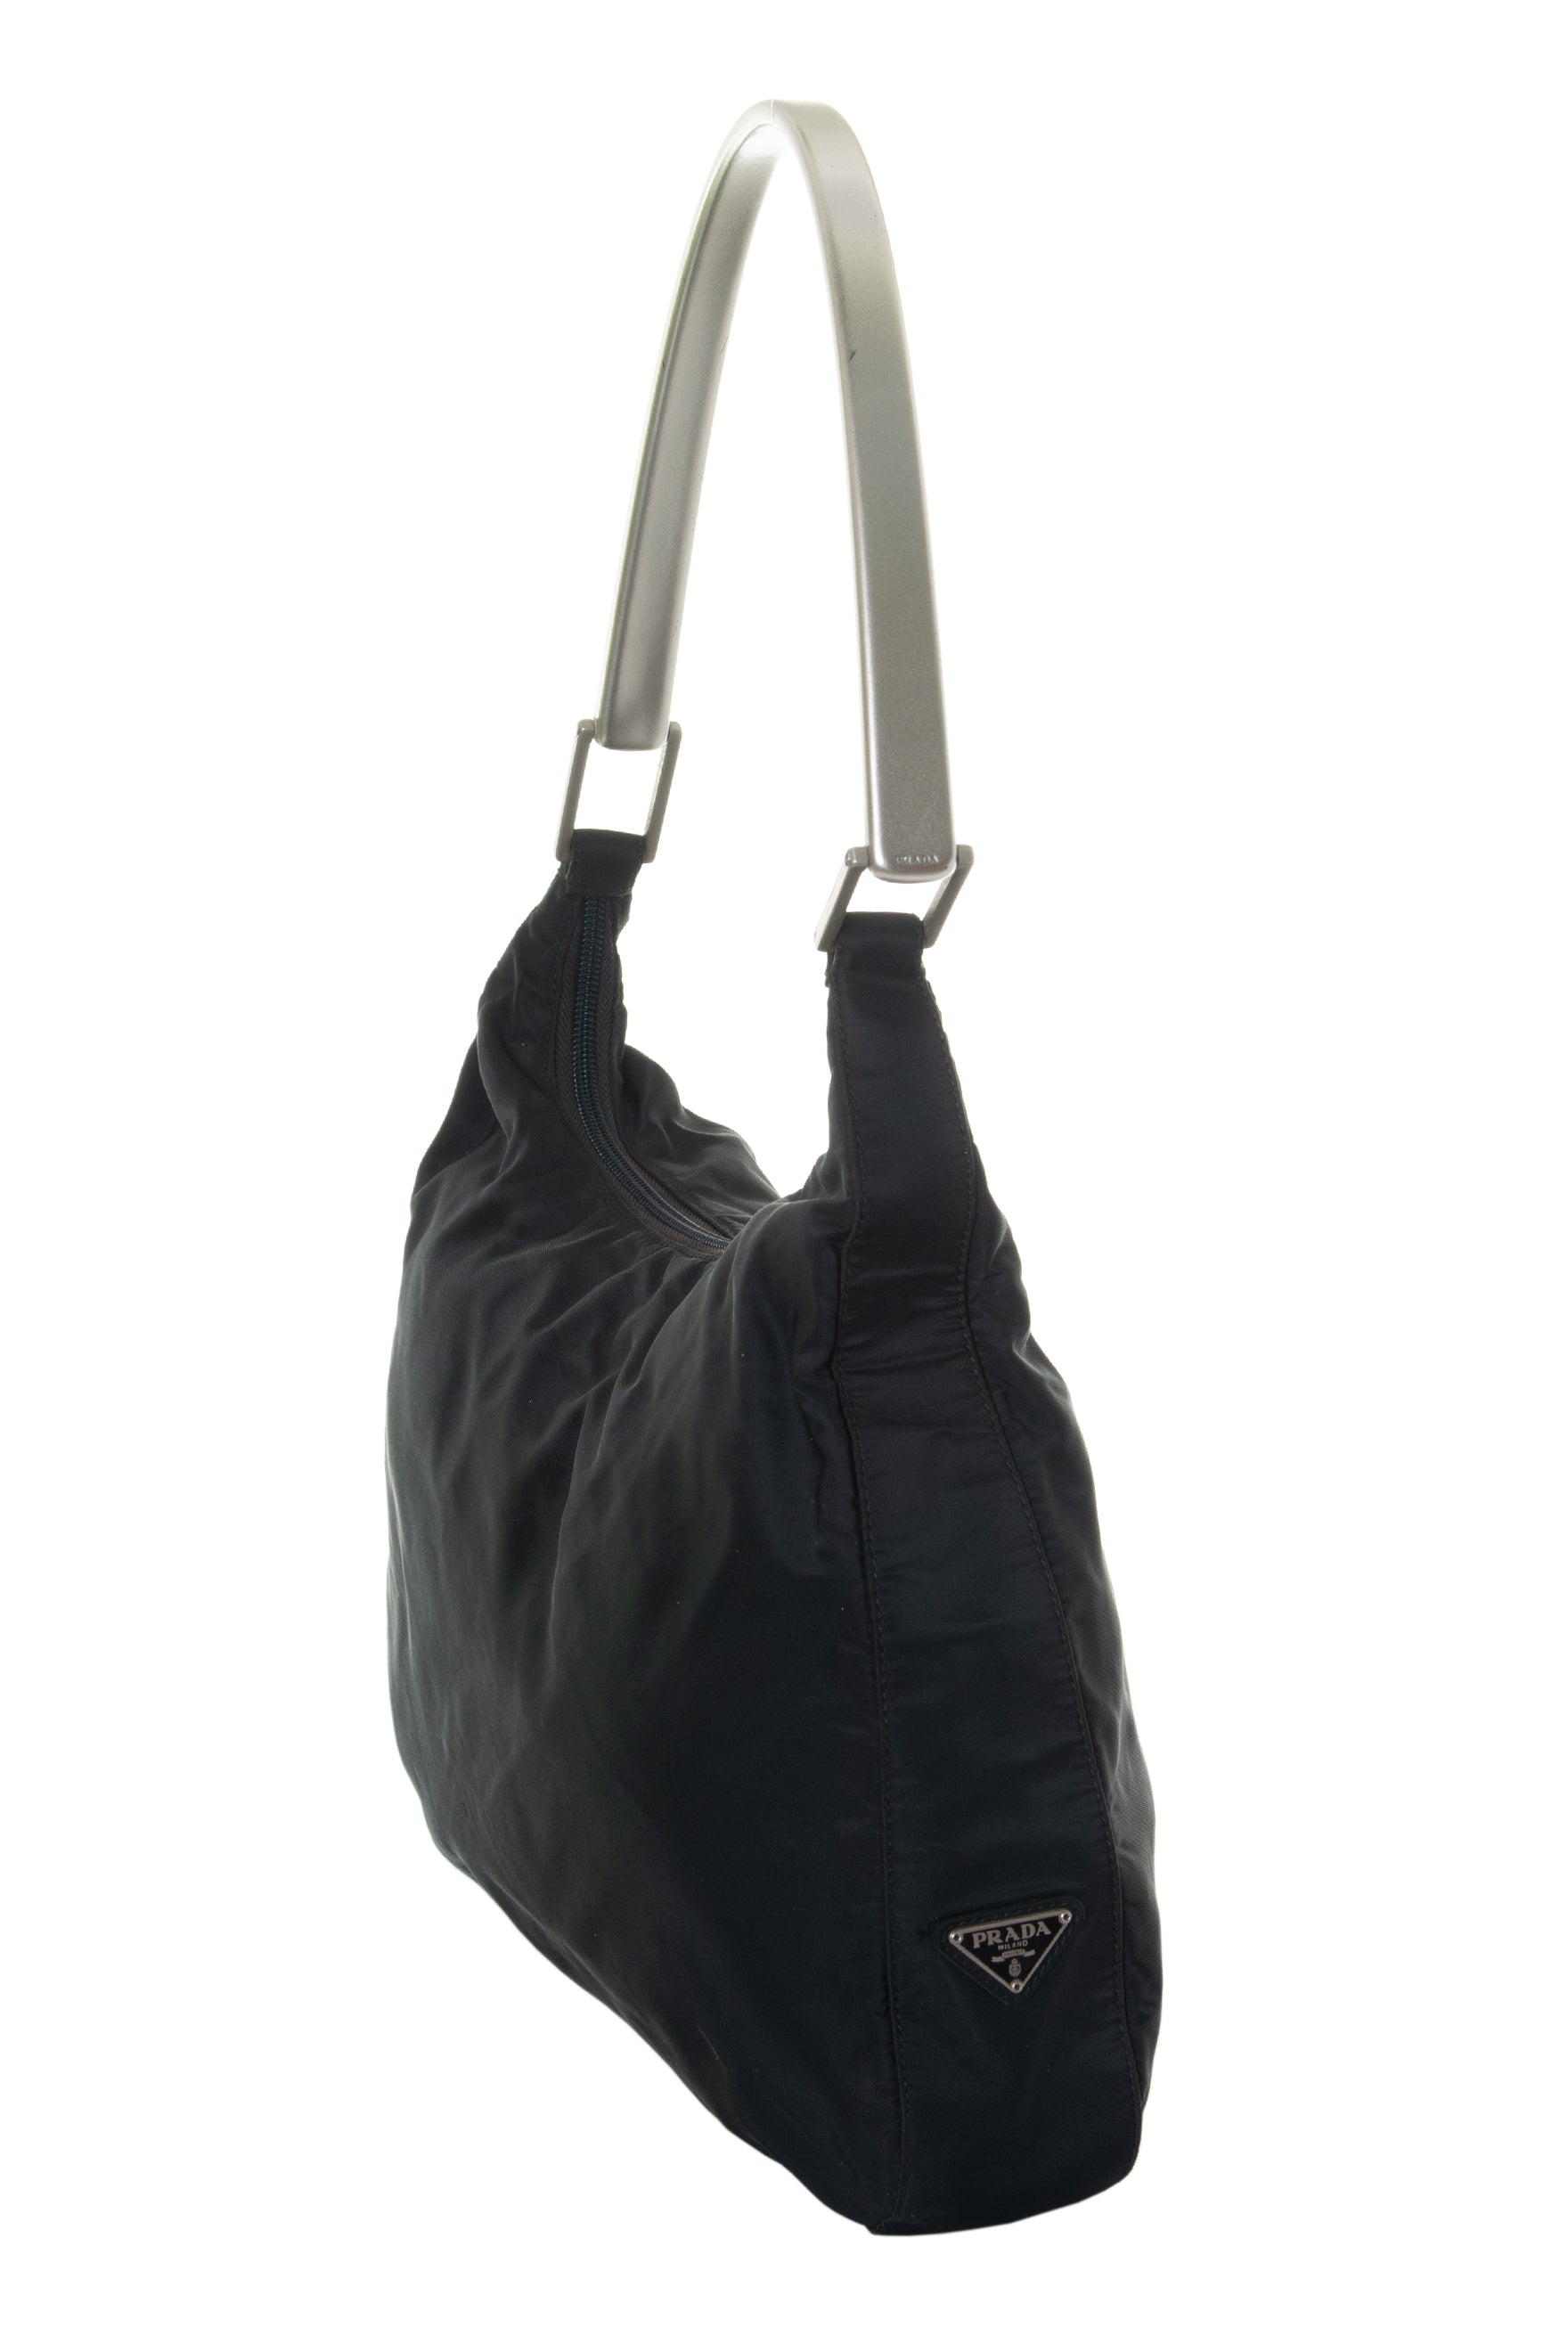 Prada Metal Handle Bag - 22 For Sale on 1stDibs